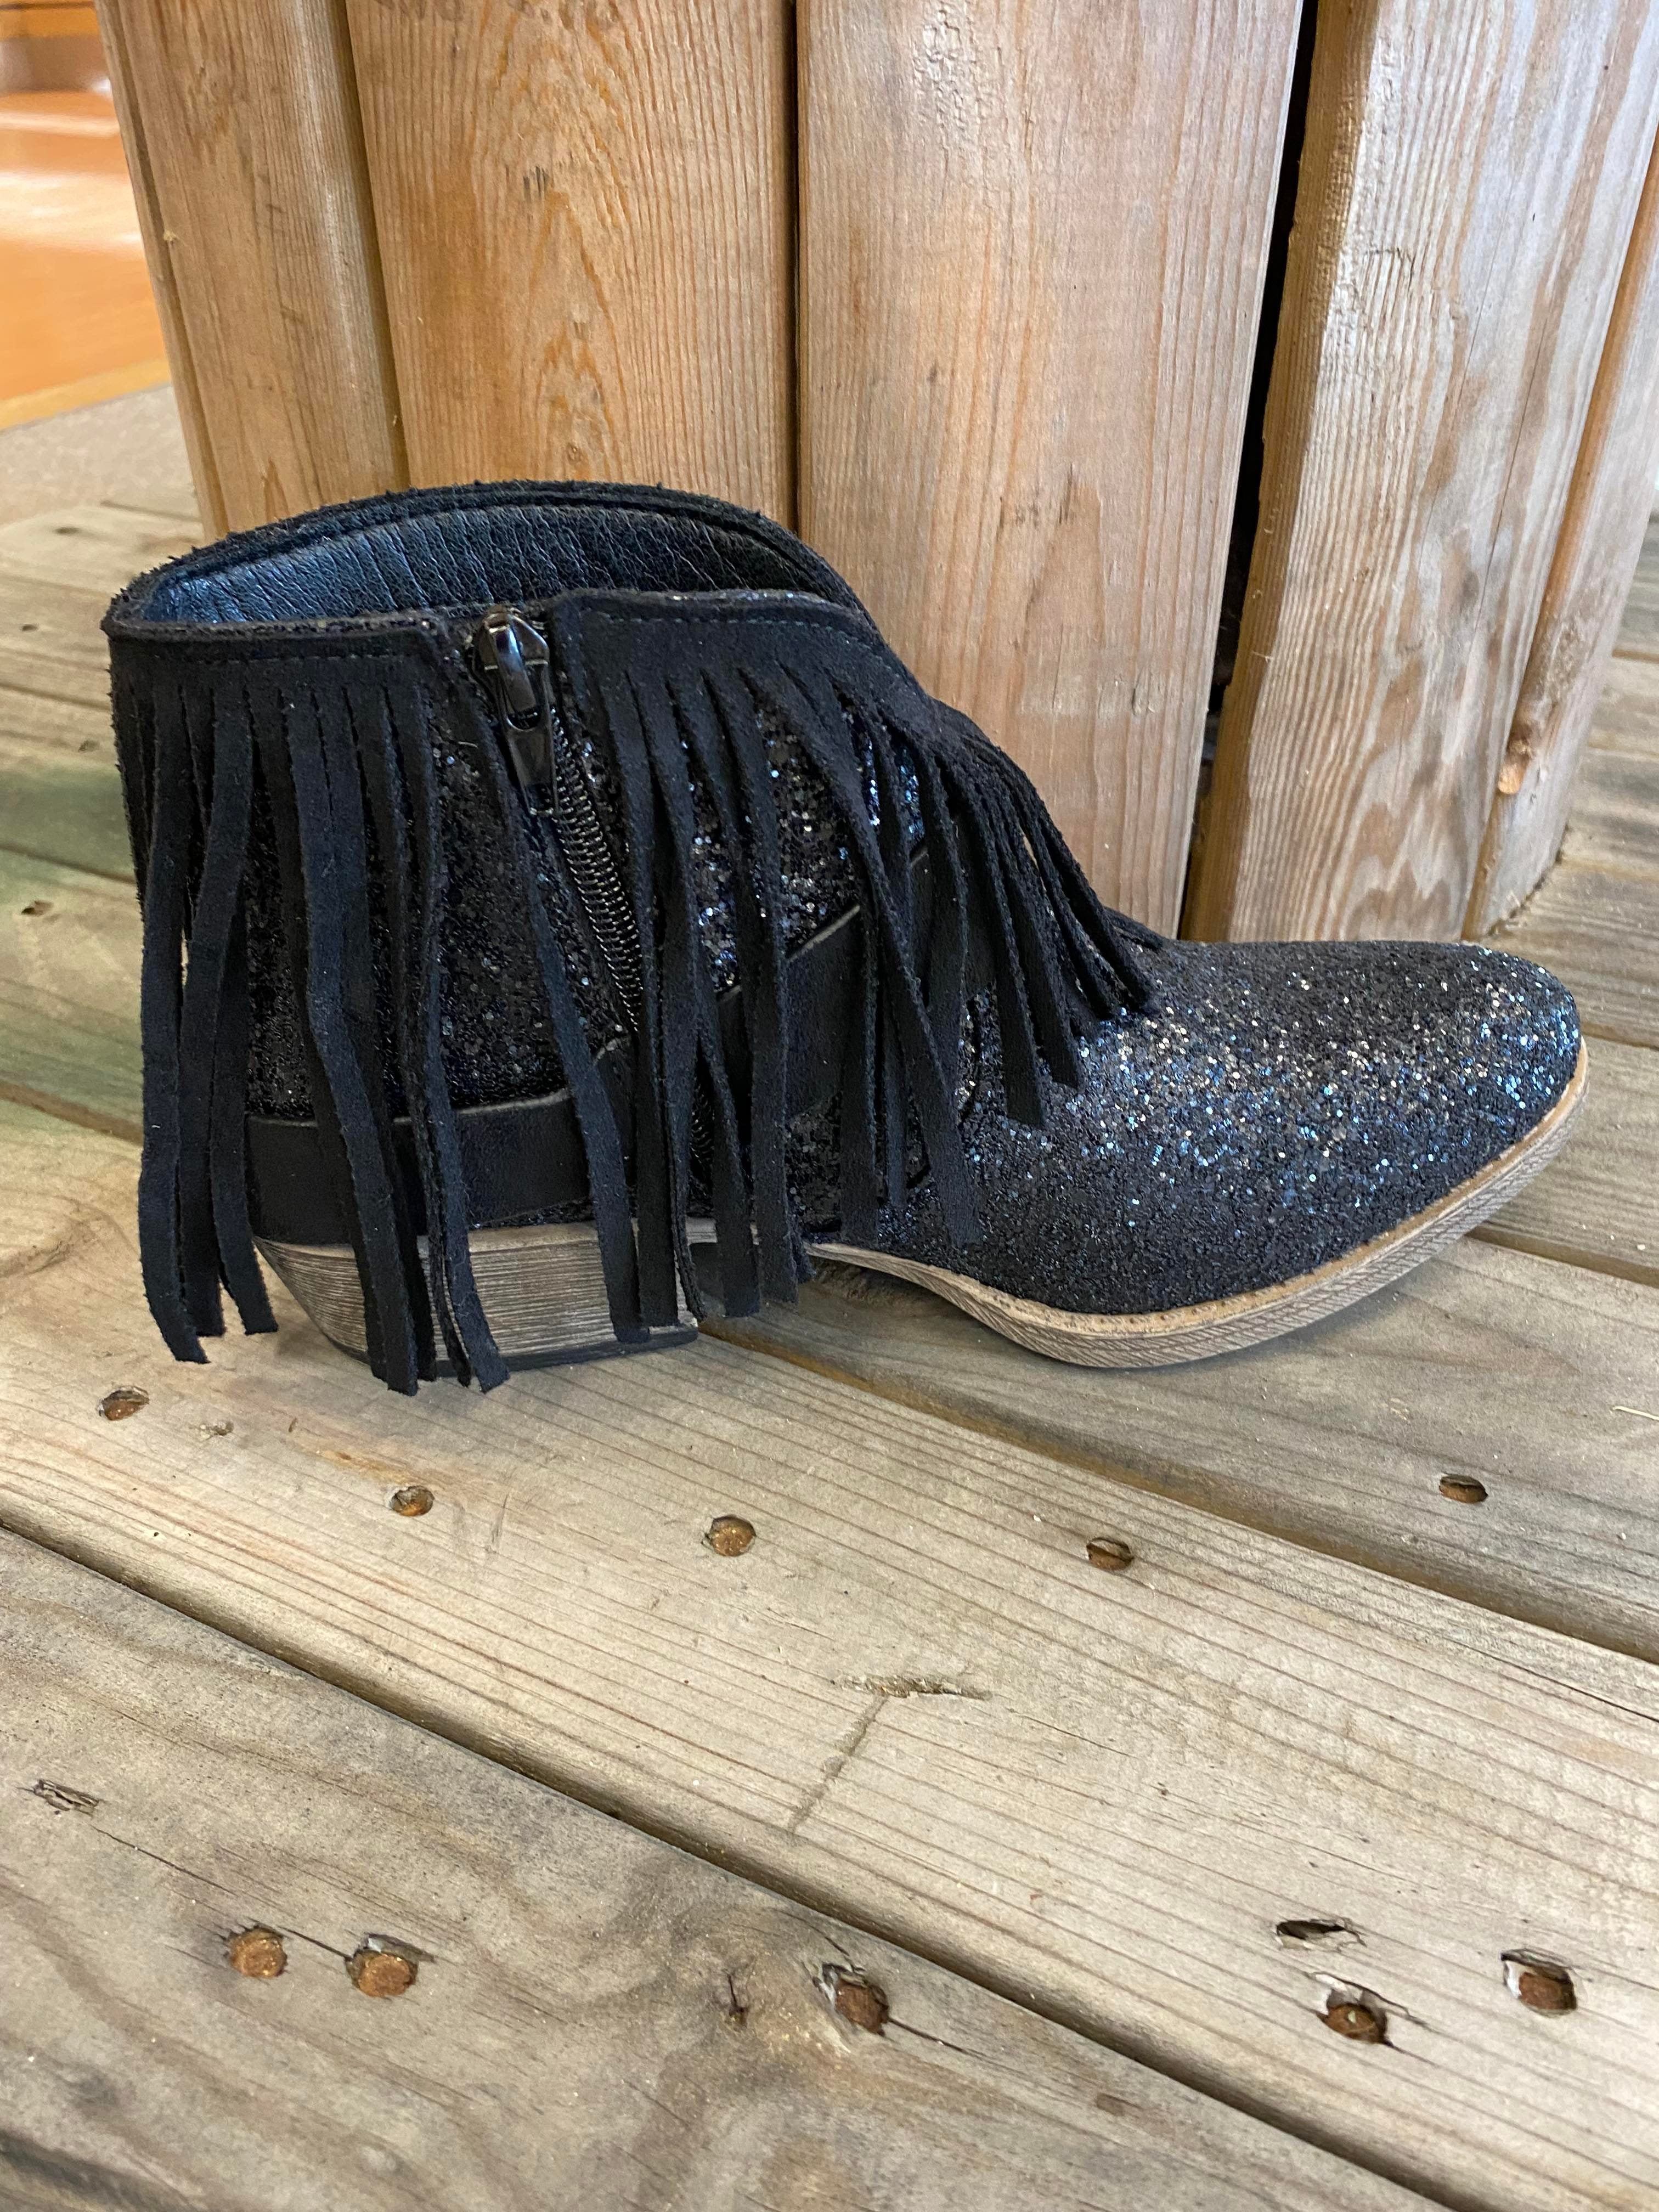 New BILLIE Western Buckel Black Tassel Sparkel Boots Inside zipper